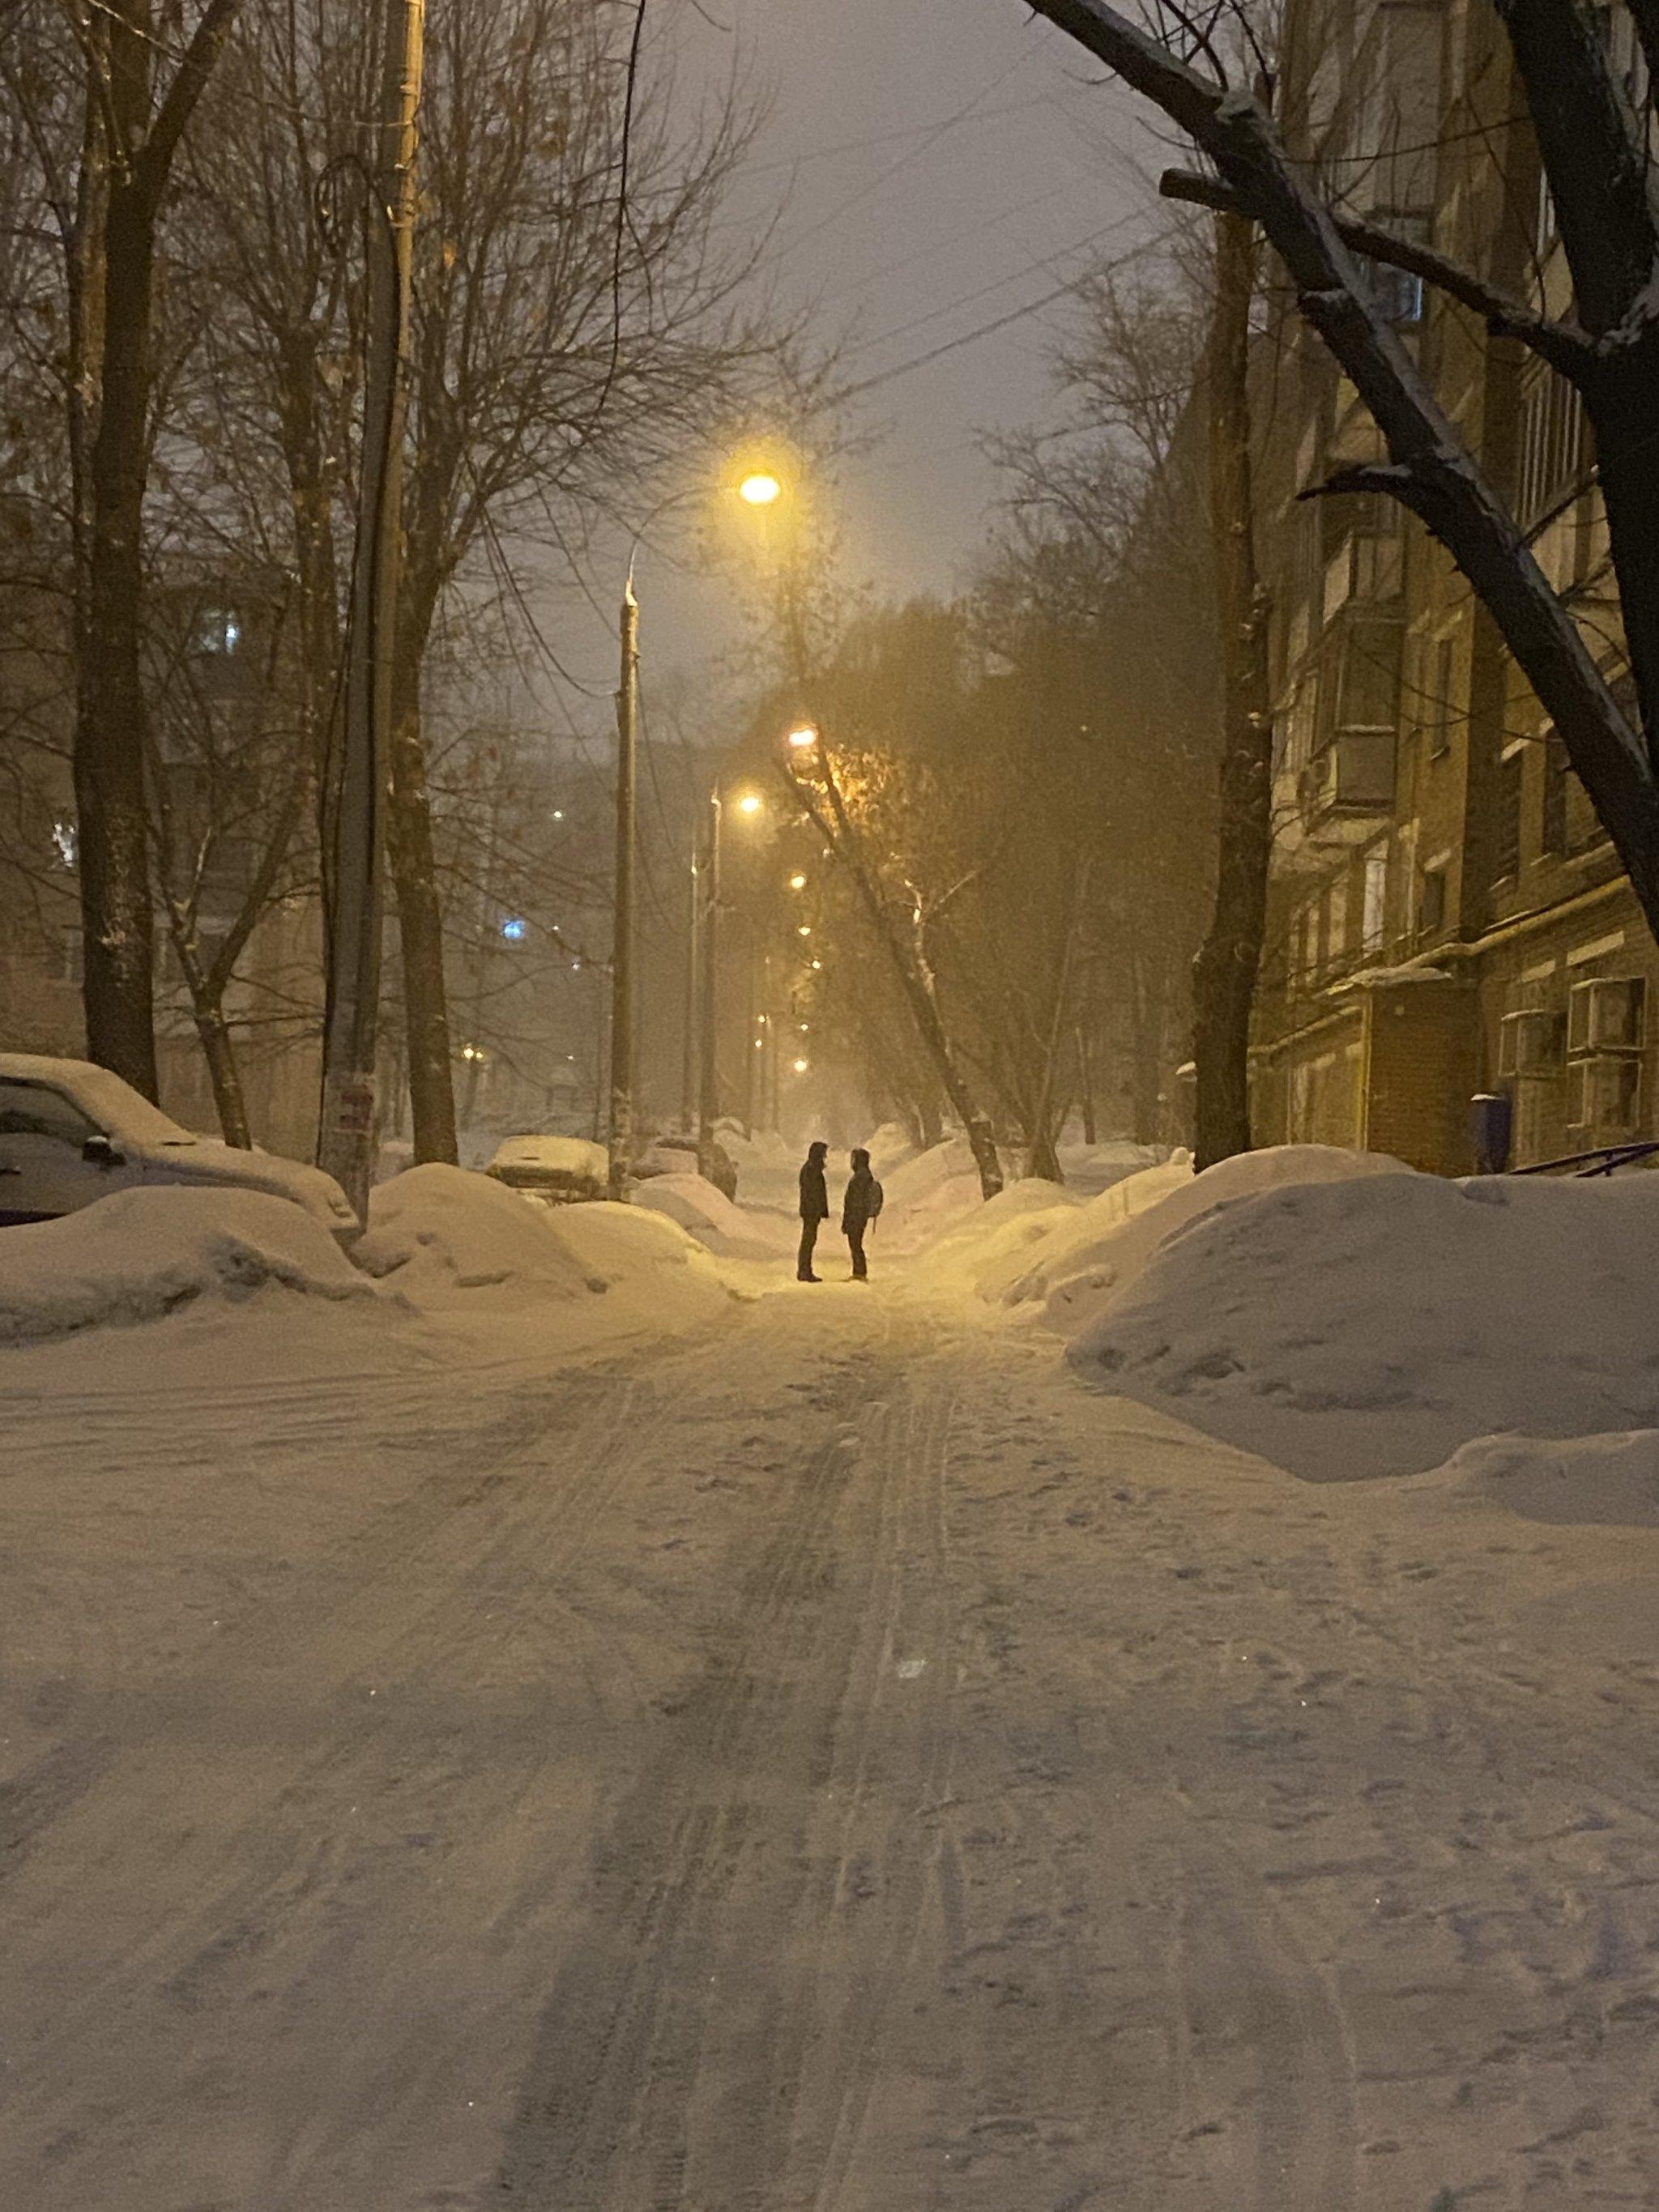 Случайно сделал фото - осознал всю романтику русской зимы | Пикабу